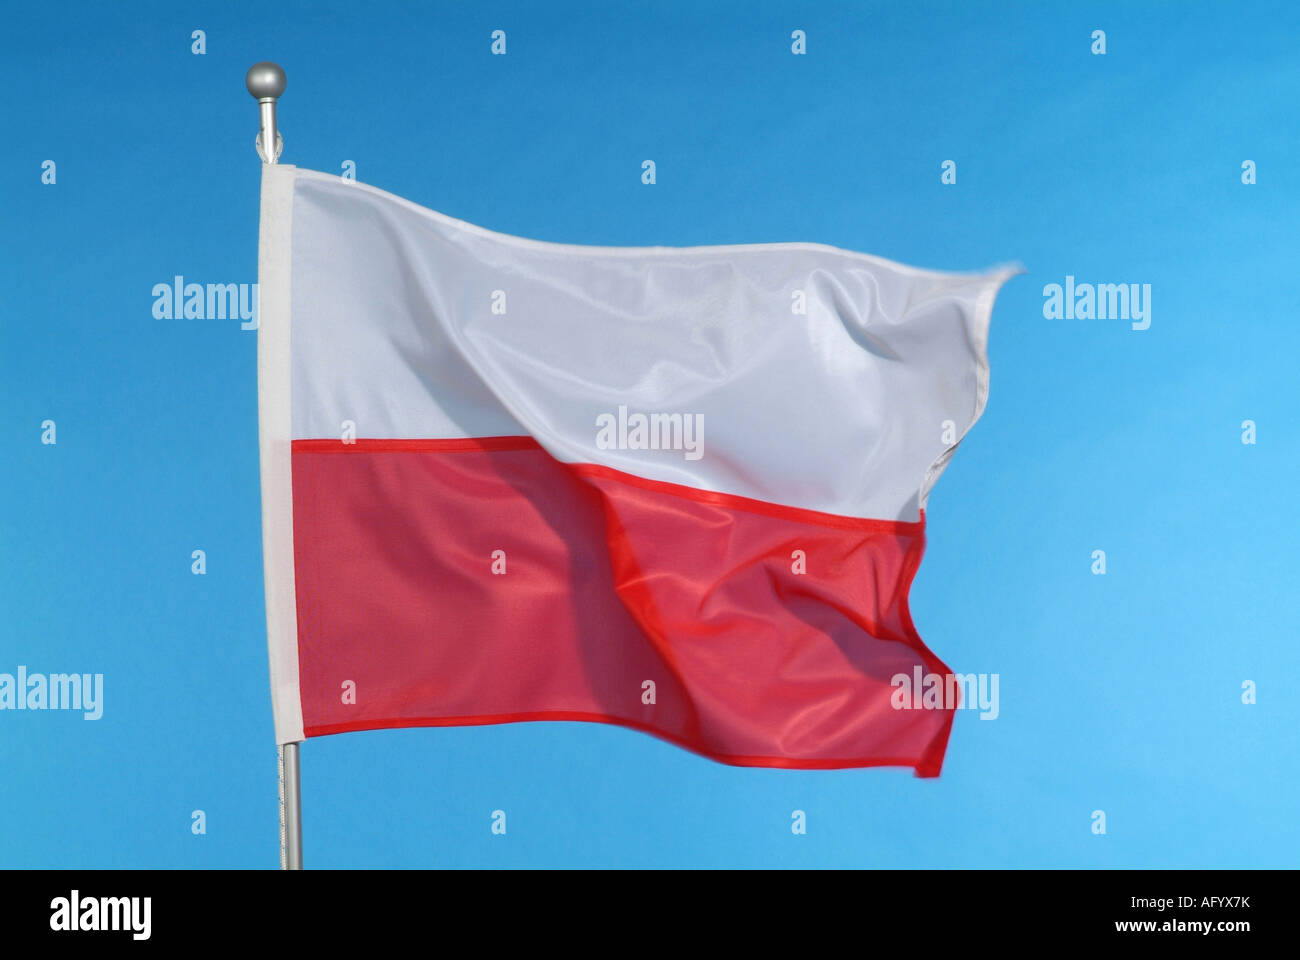 Drapeau national polonais contre le ciel bleu Banque D'Images